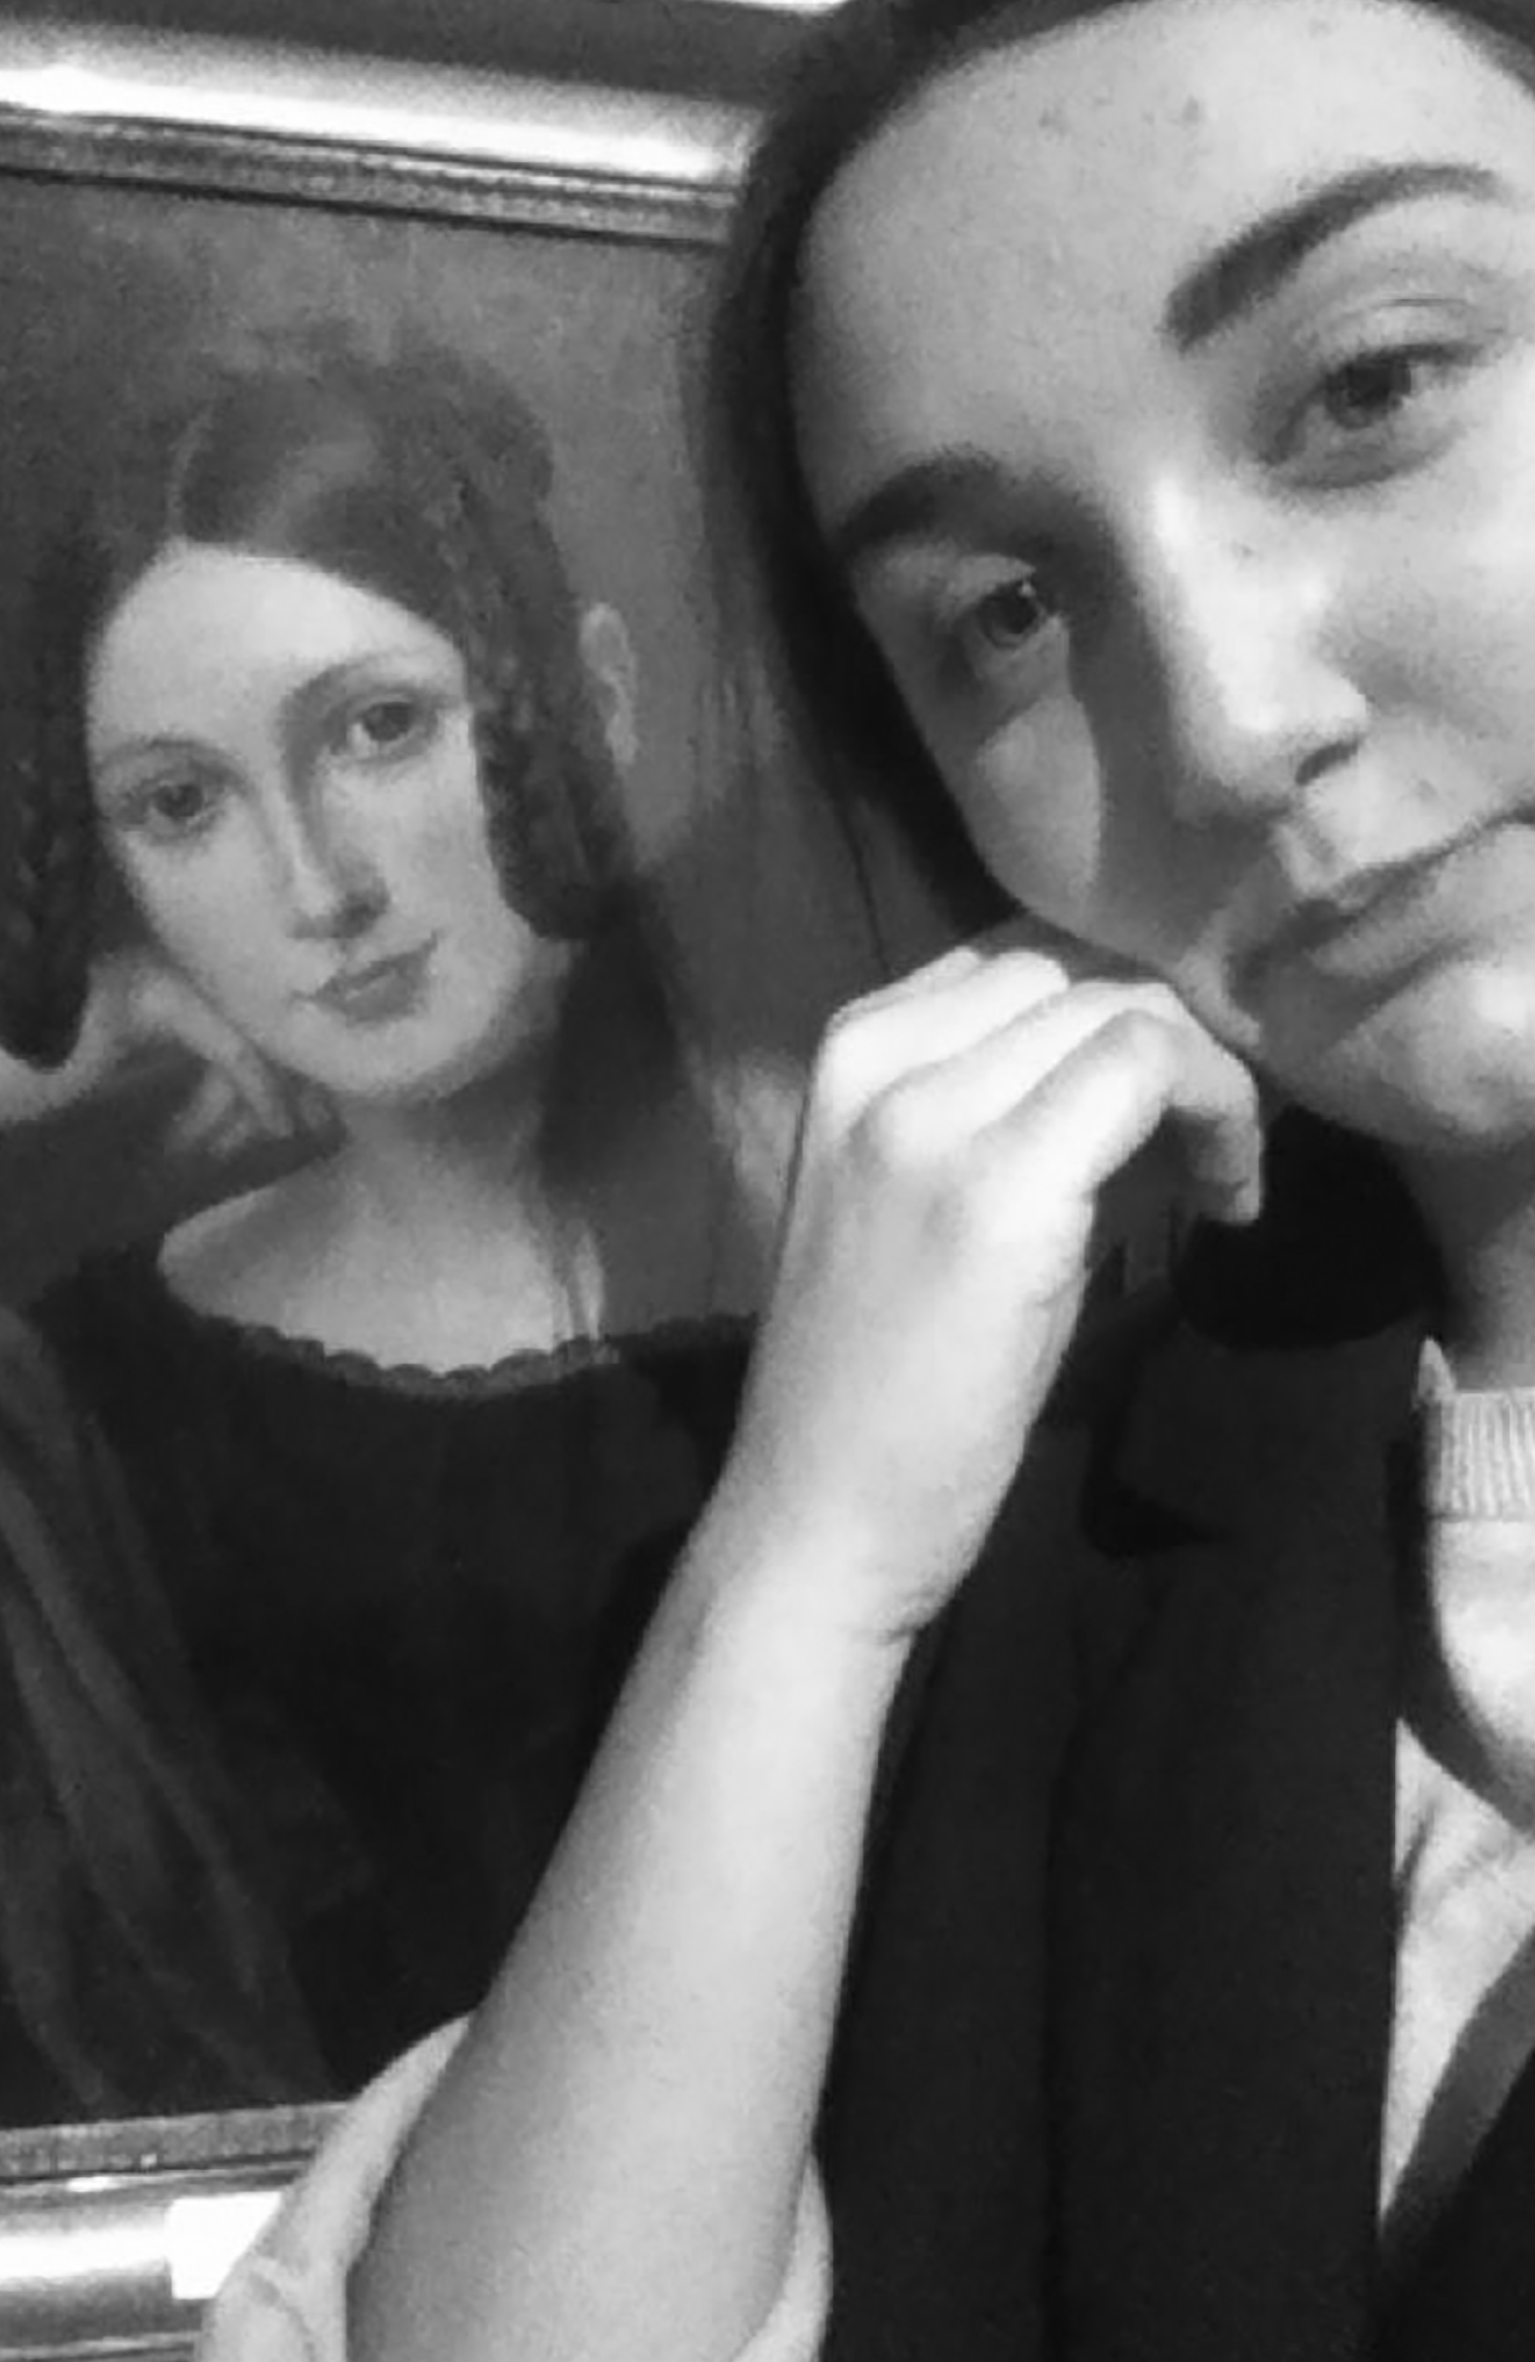 Perempuan selfie di depan lukisan perempuan berpangku tangan. Fitur wajah perempuan dalam lukisan dan foto sangat mirip.